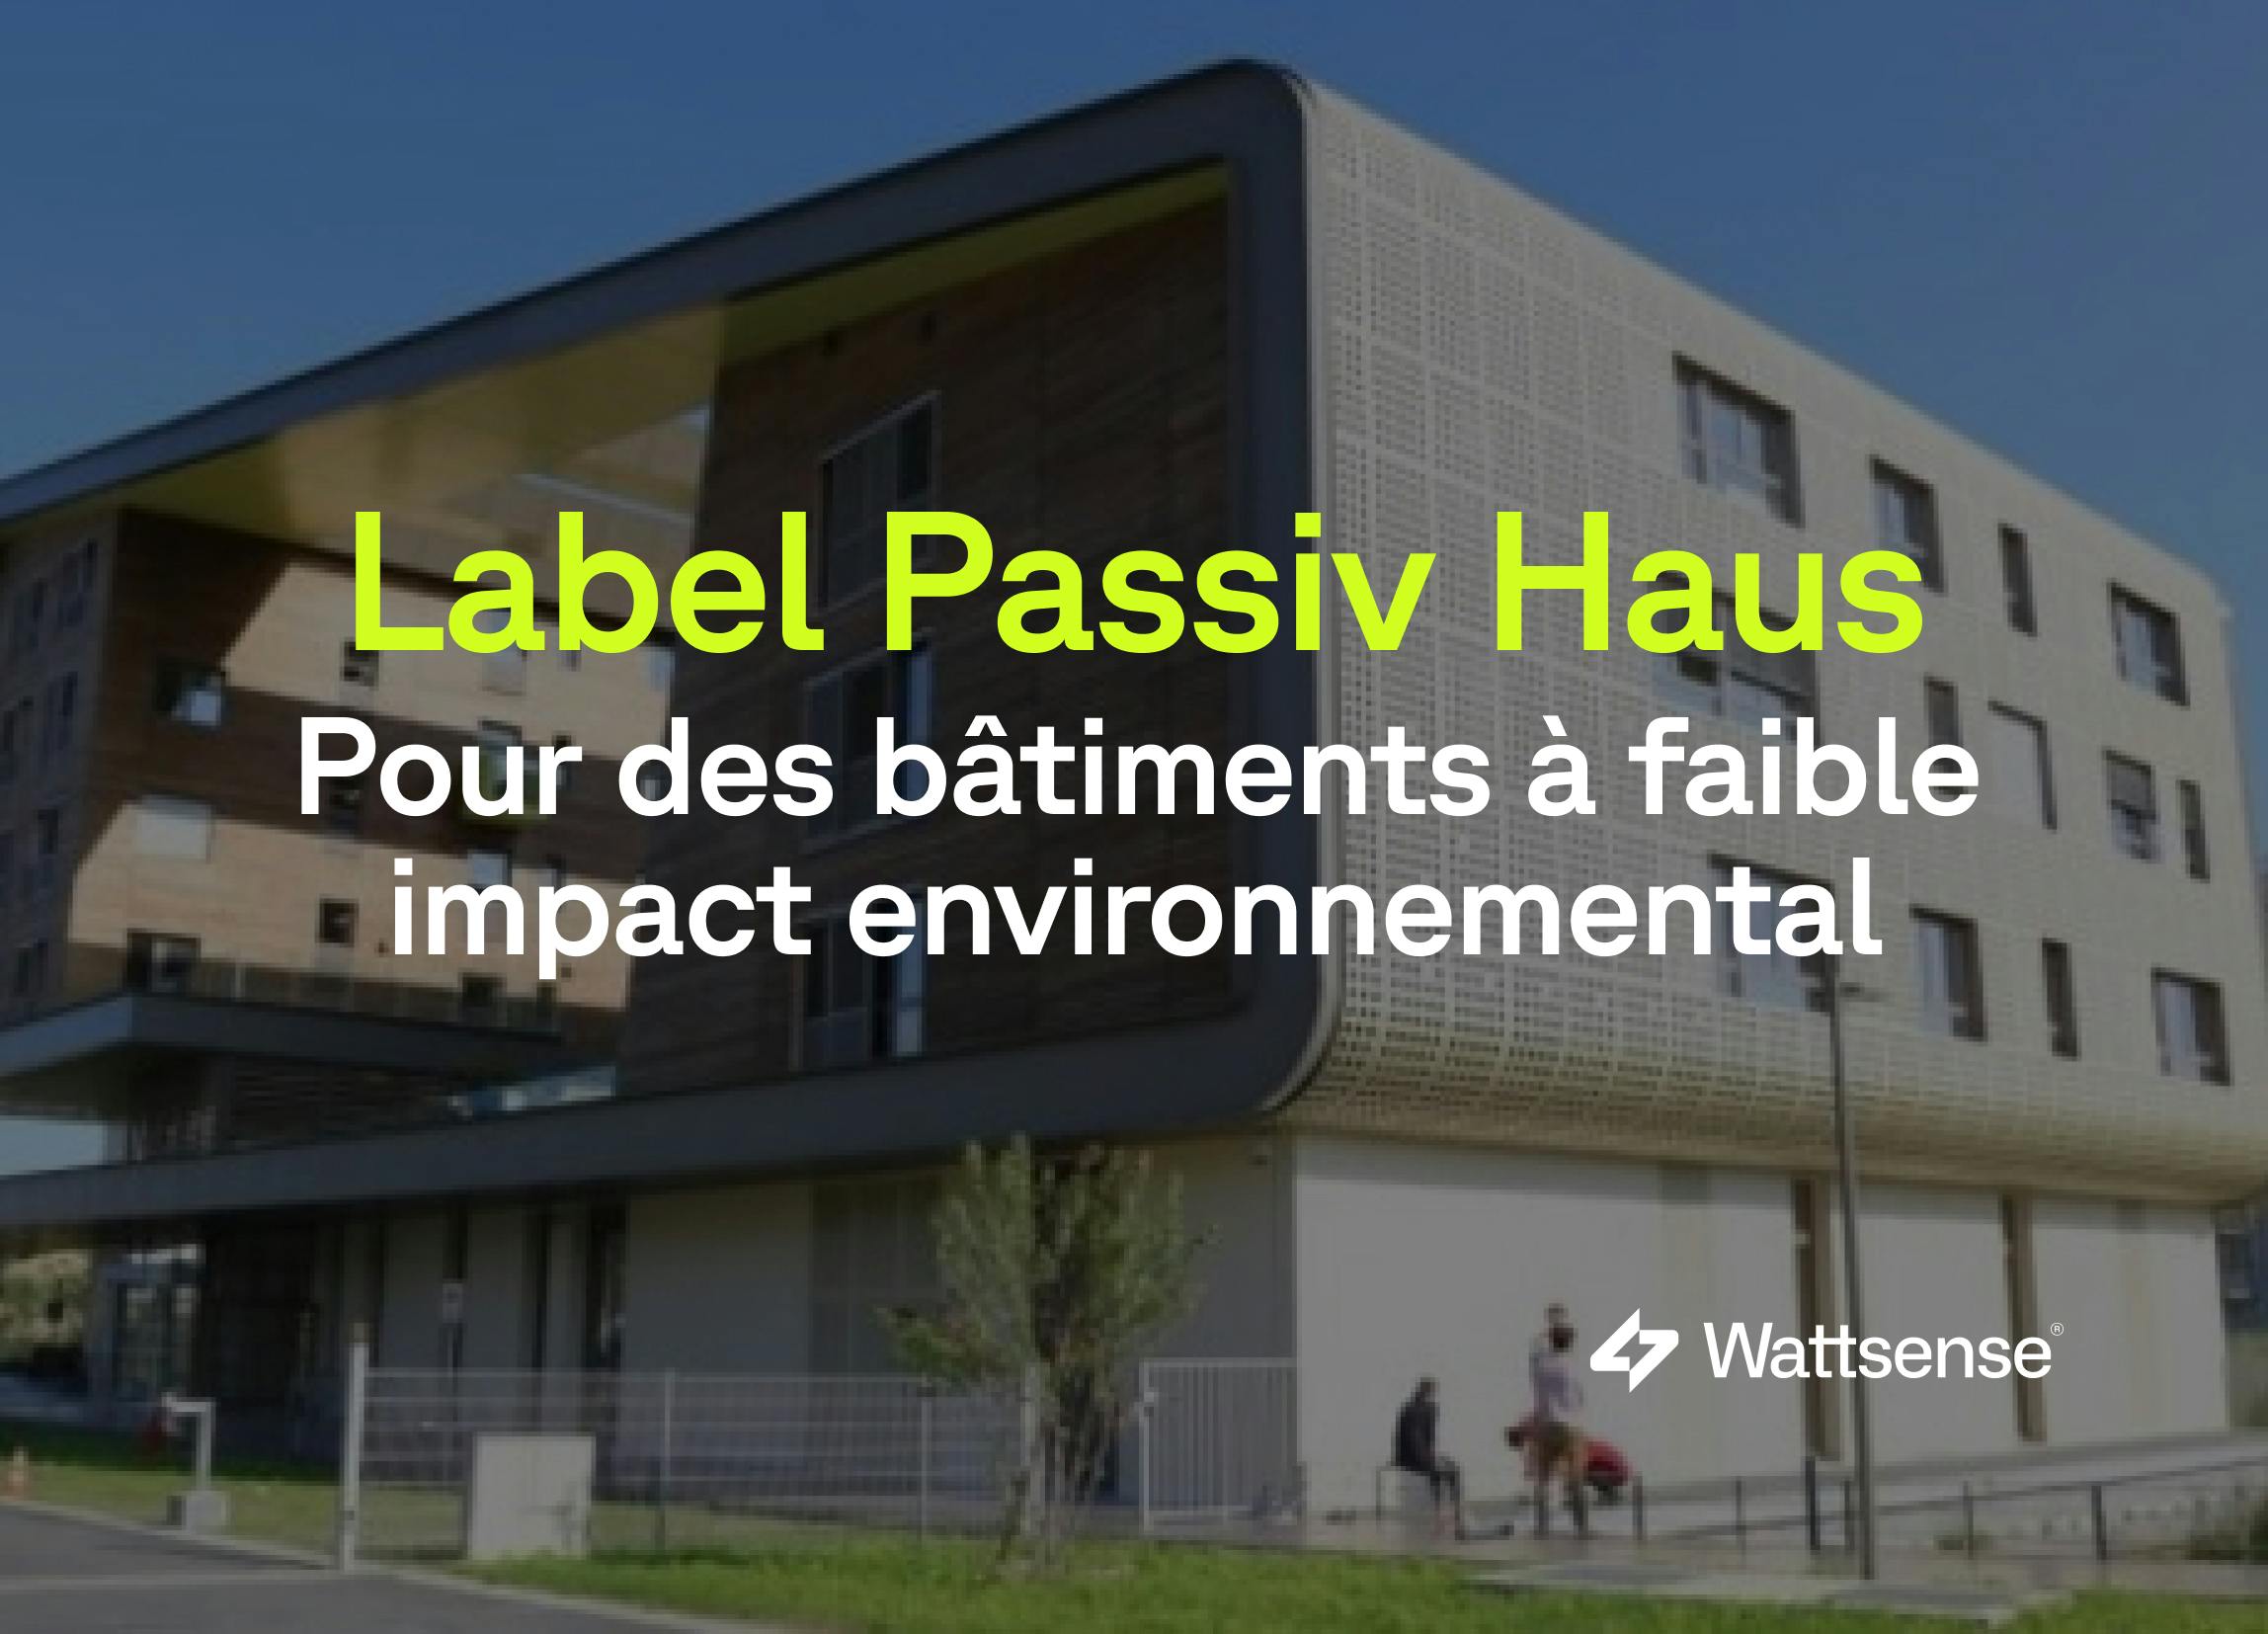 Passiv Haus, le label ultime des bâtiments respectueux de l’environnement ?